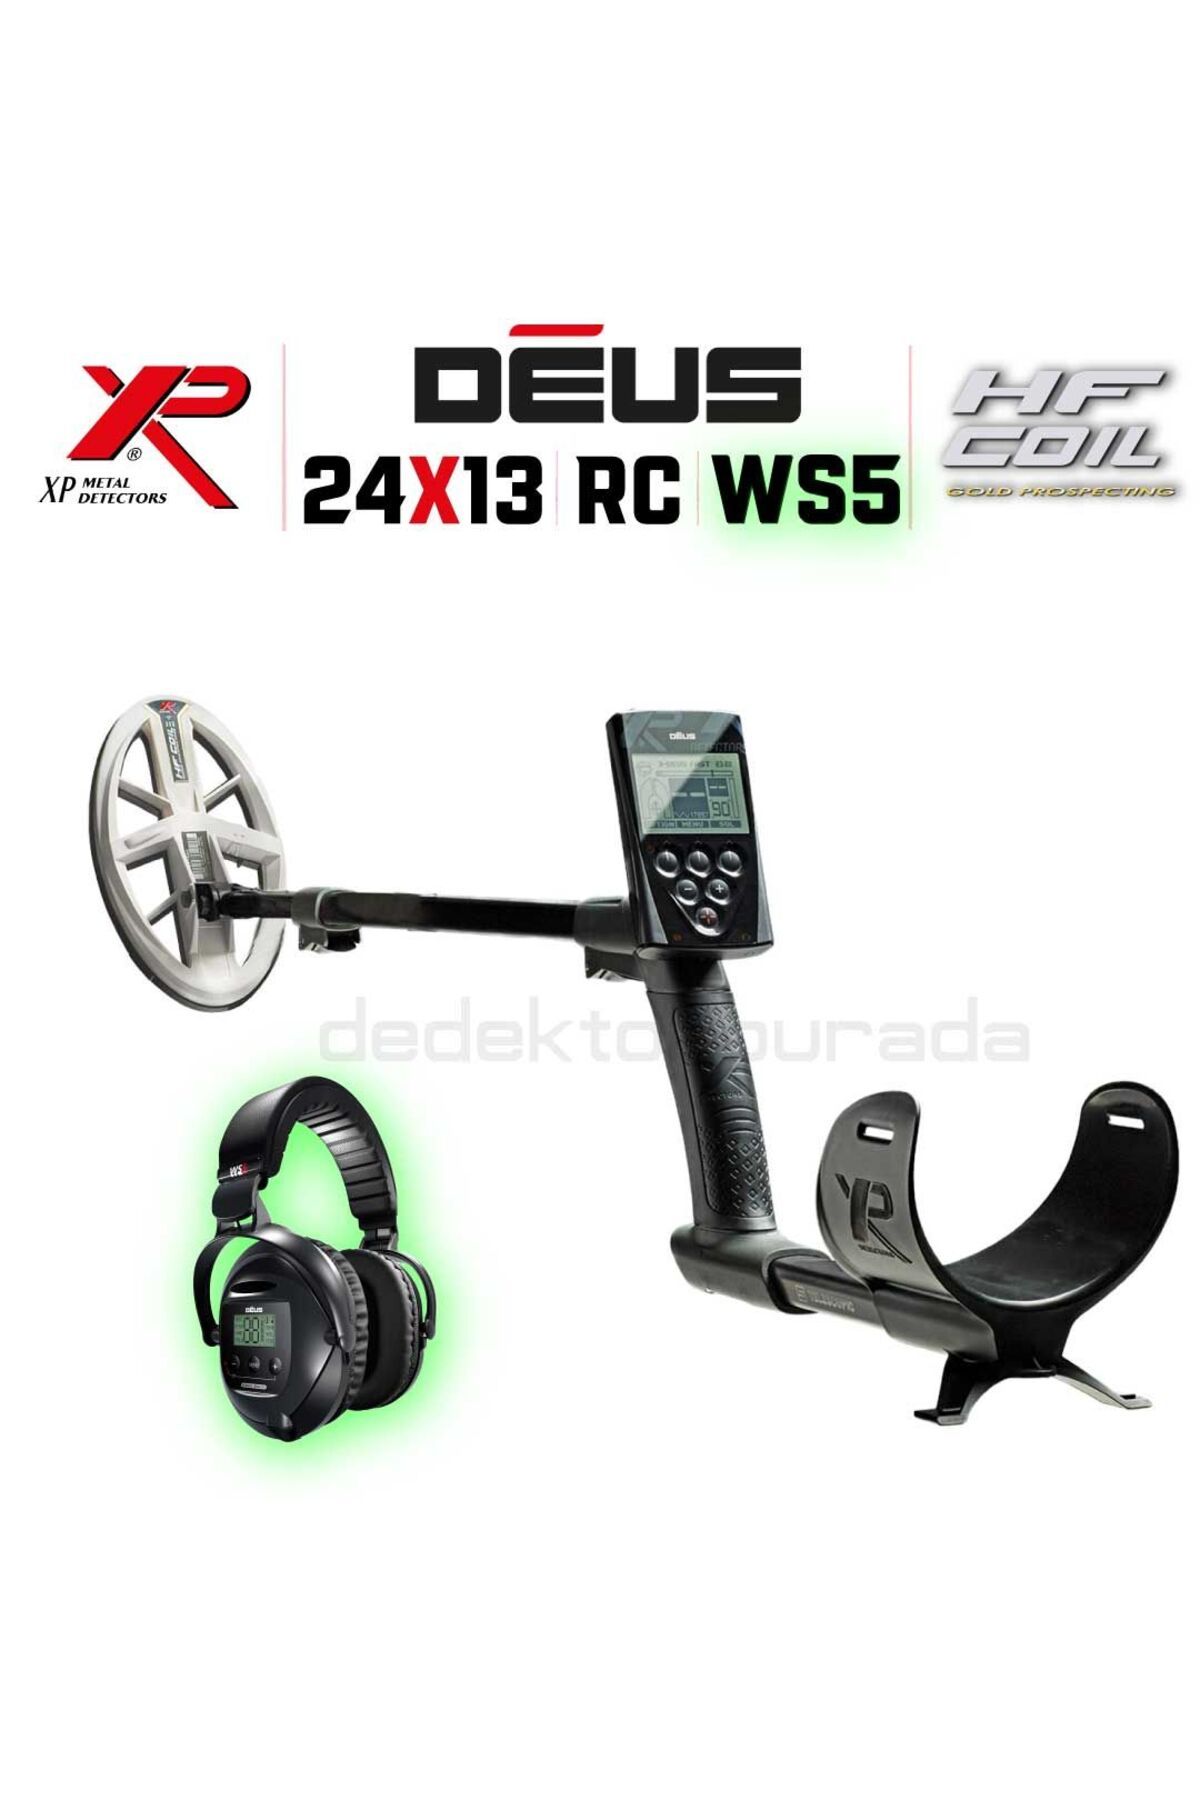 xp Deus Dedektör - 24x13cm HF Elips Başlık, Ana Kontrol Ünitesi,Ws5 Kulaklık